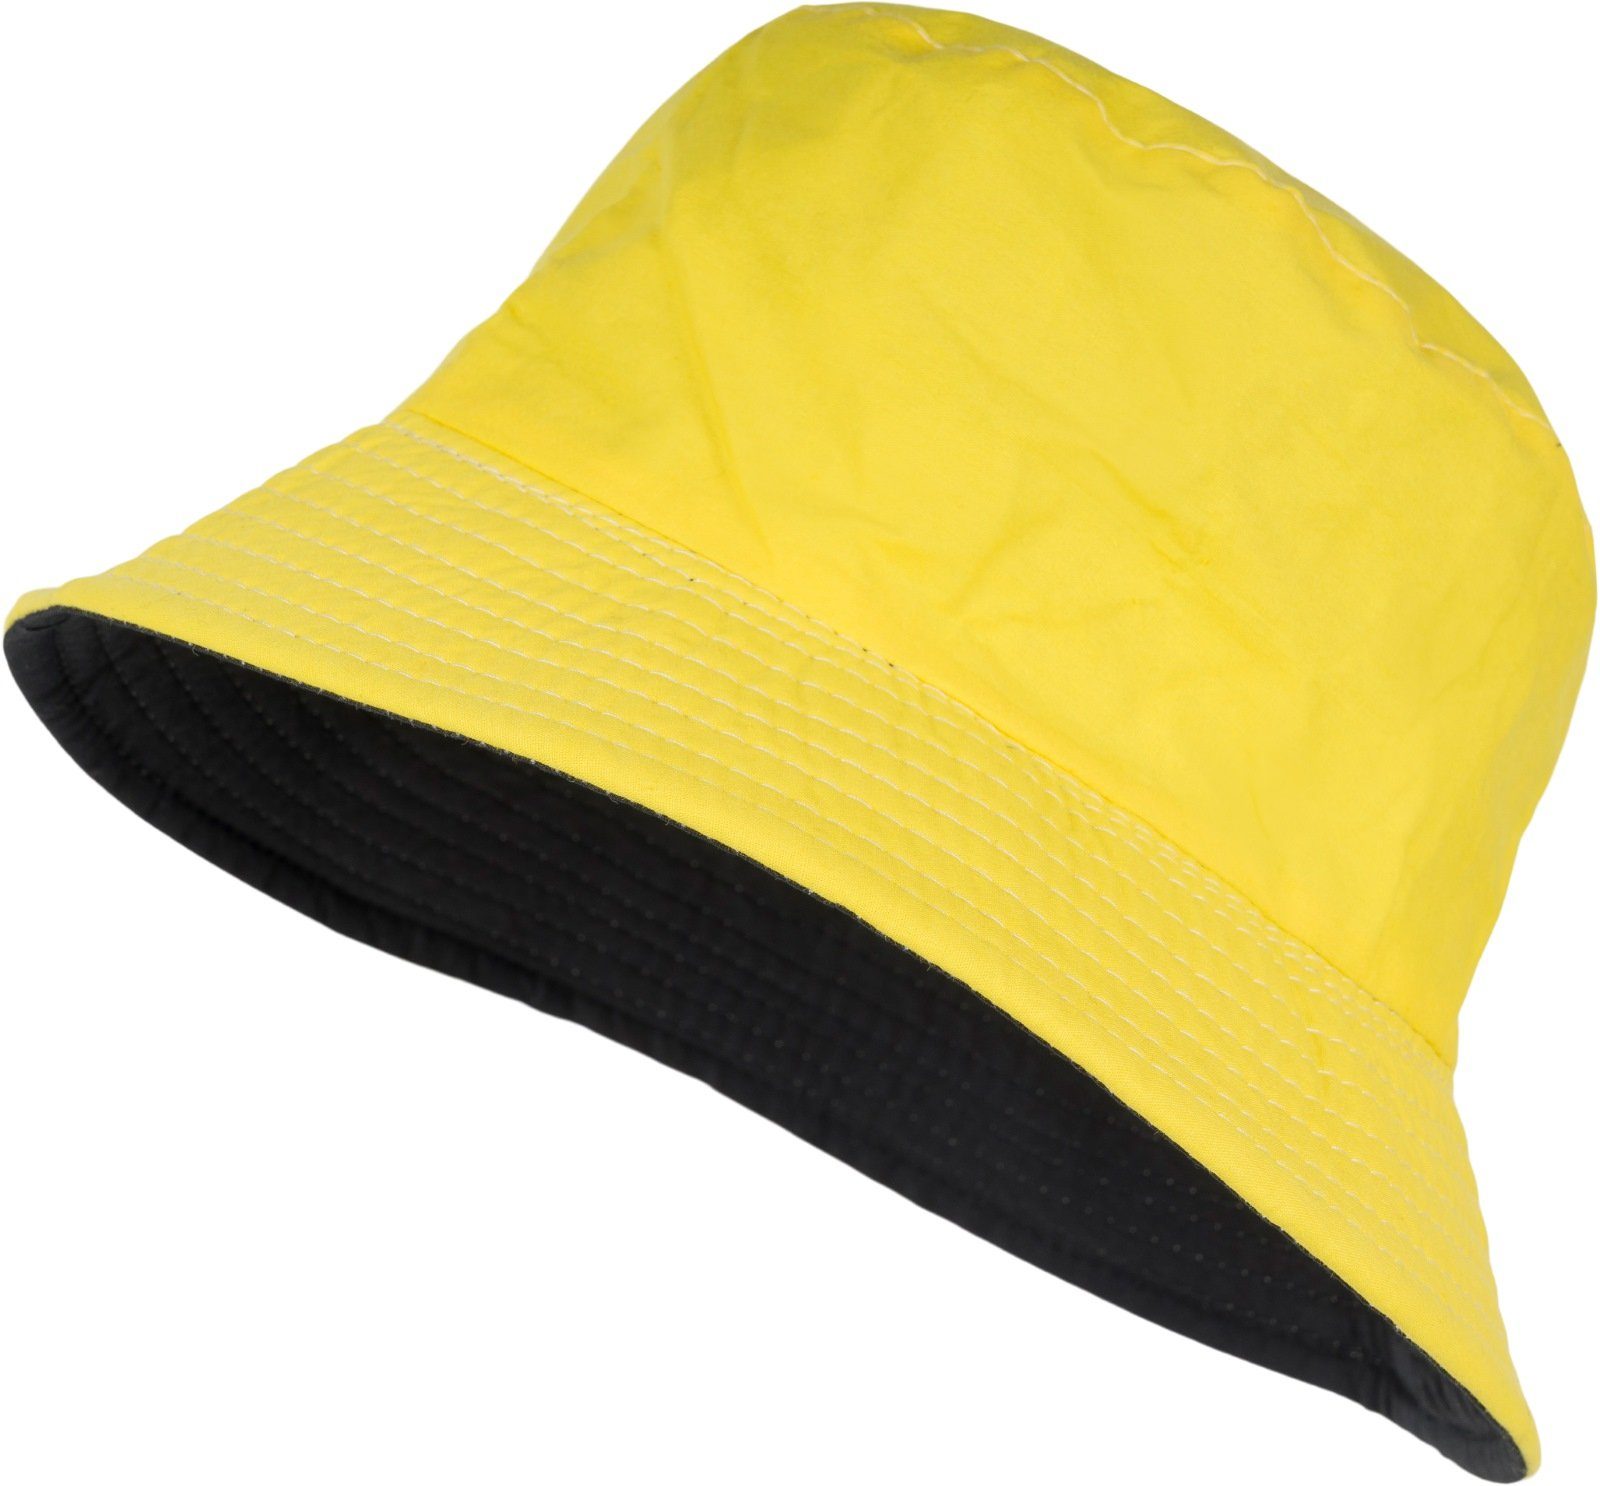 Gelbe Fischerhüte online kaufen | OTTO